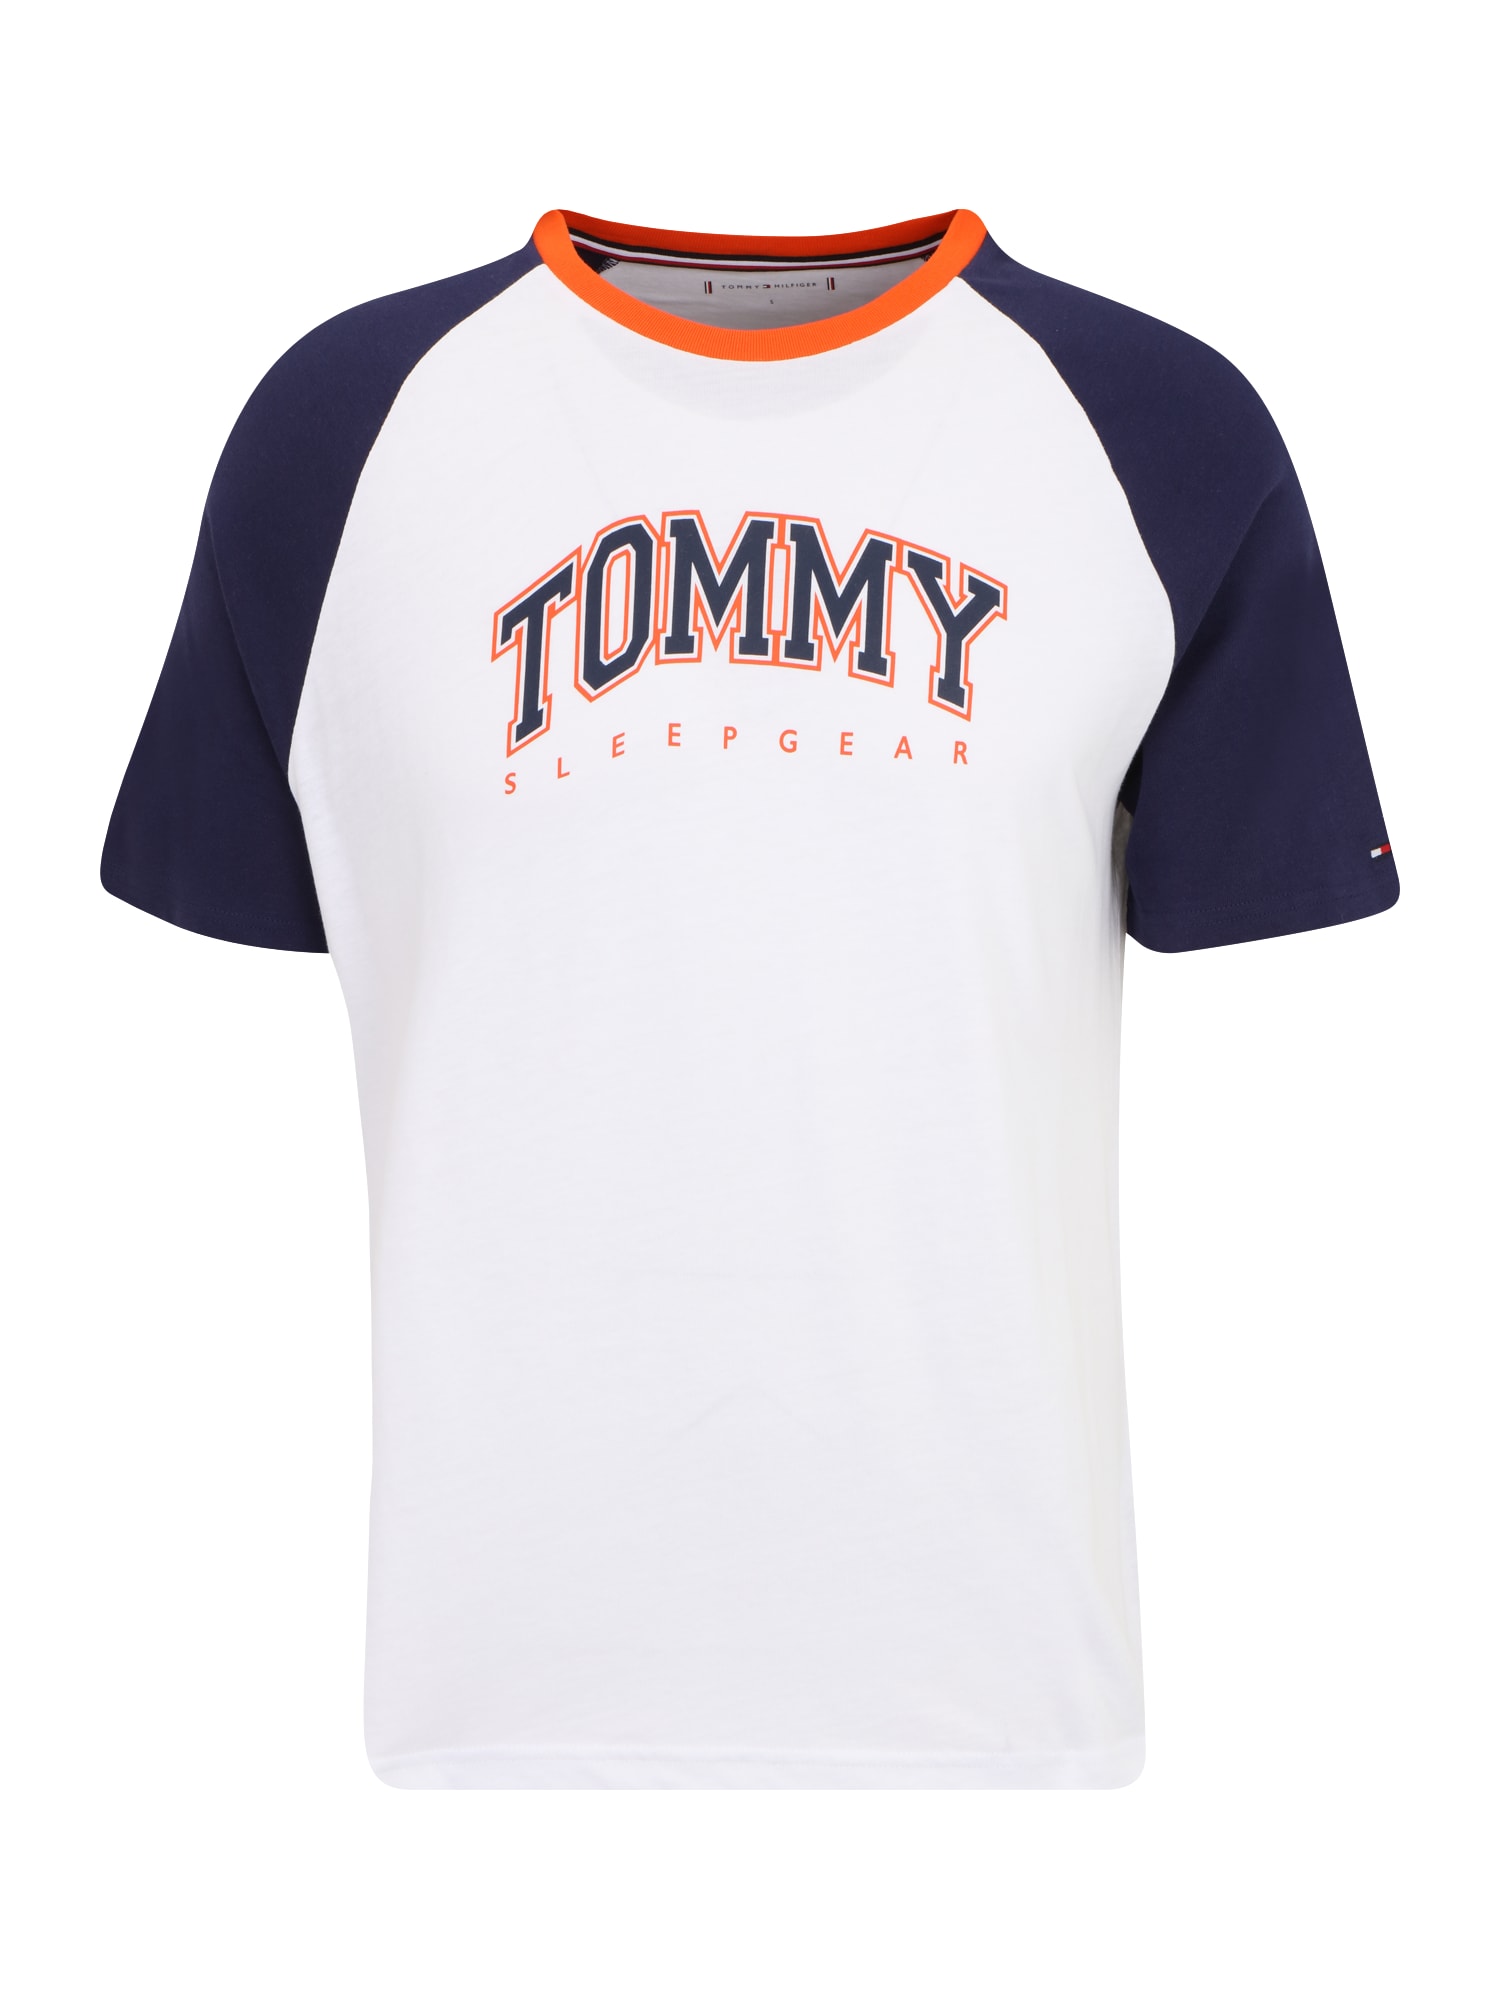 Tommy Hilfiger Underwear Tielko  námornícka modrá / oranžová / biela